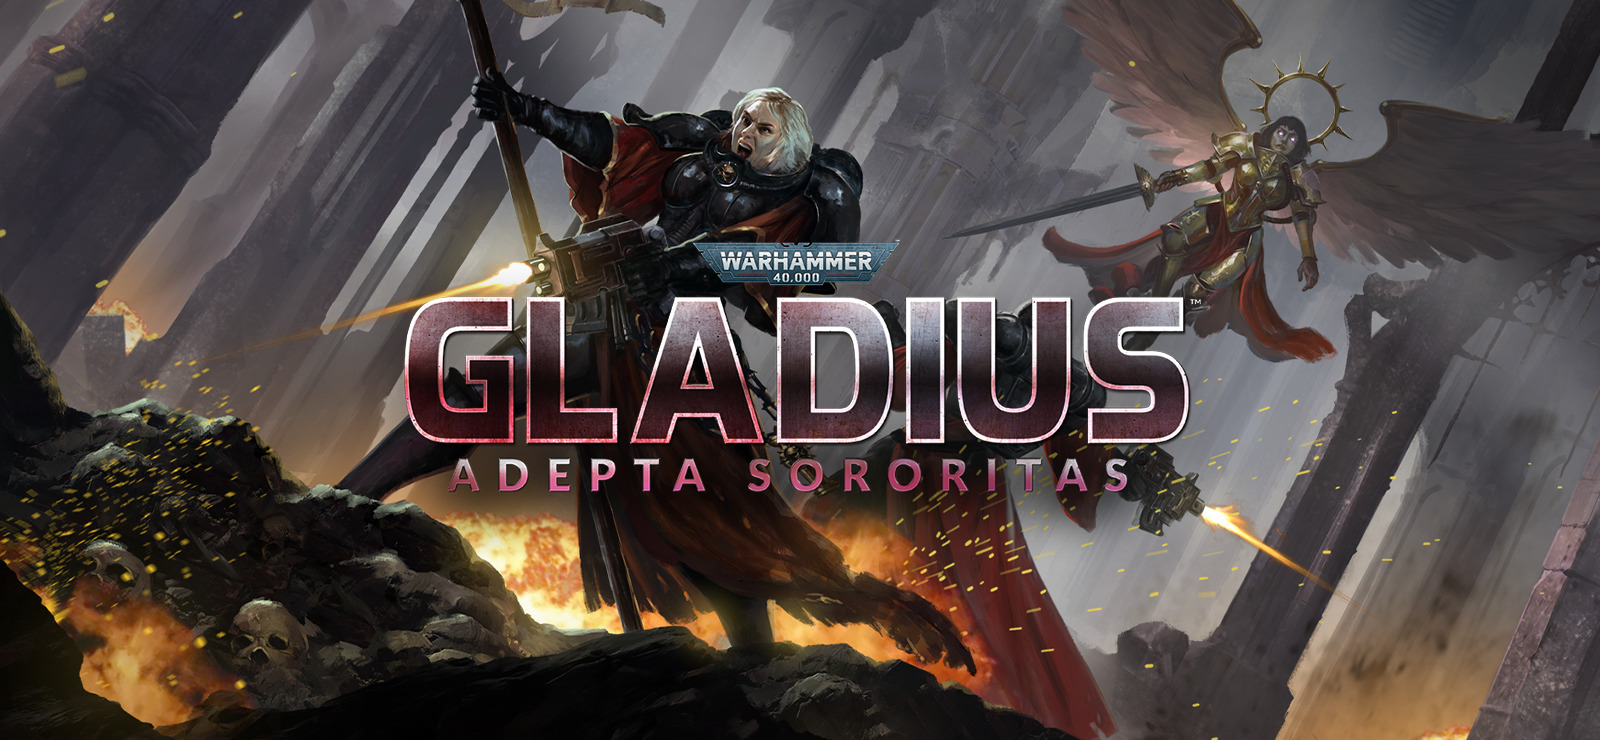 Warhammer 40,000: Gladius - Adepta Sororitas on